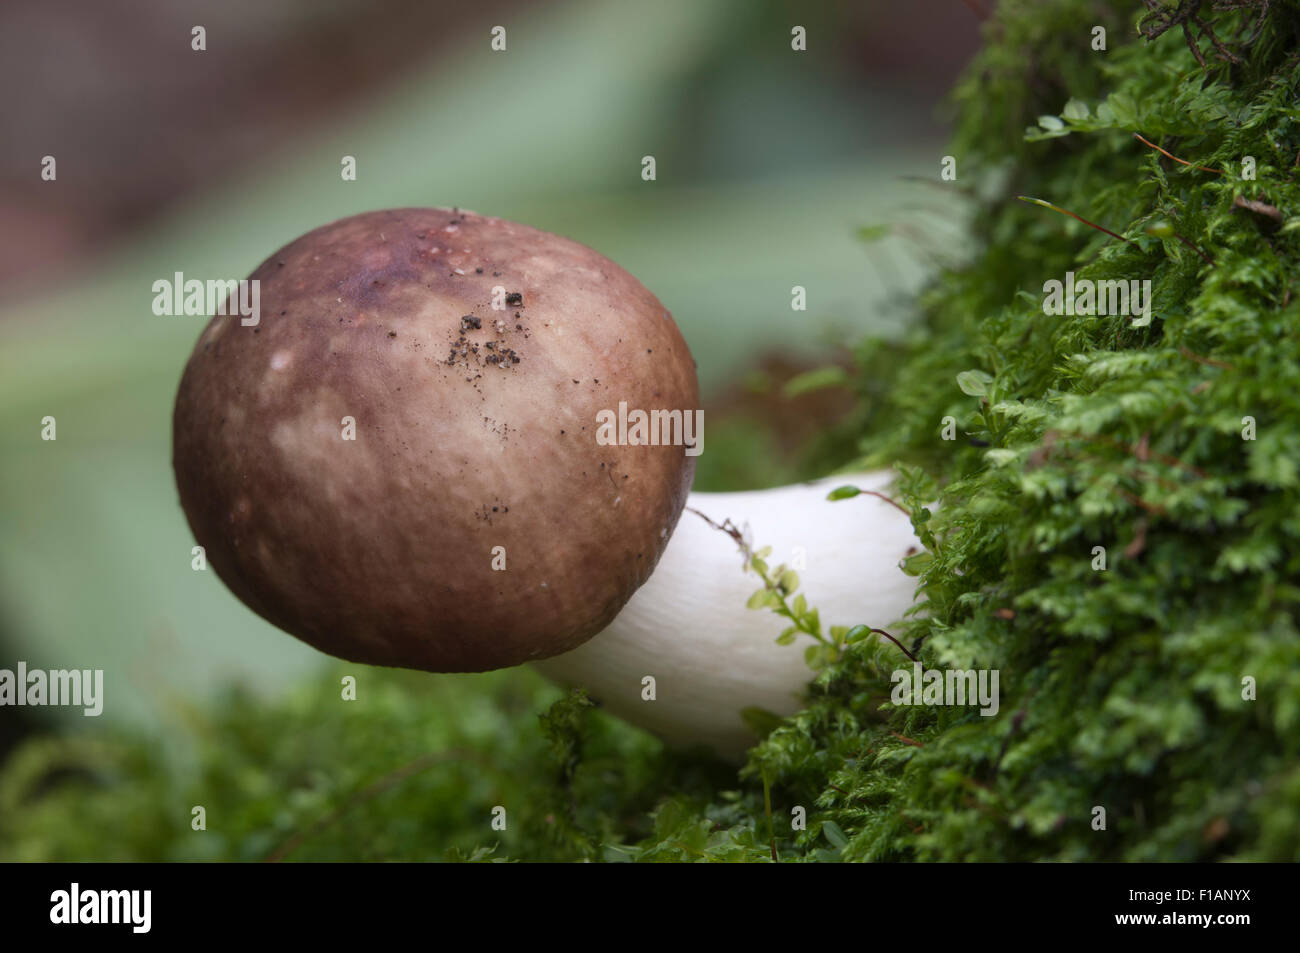 Russula mushrooms on an old stump Stock Photo